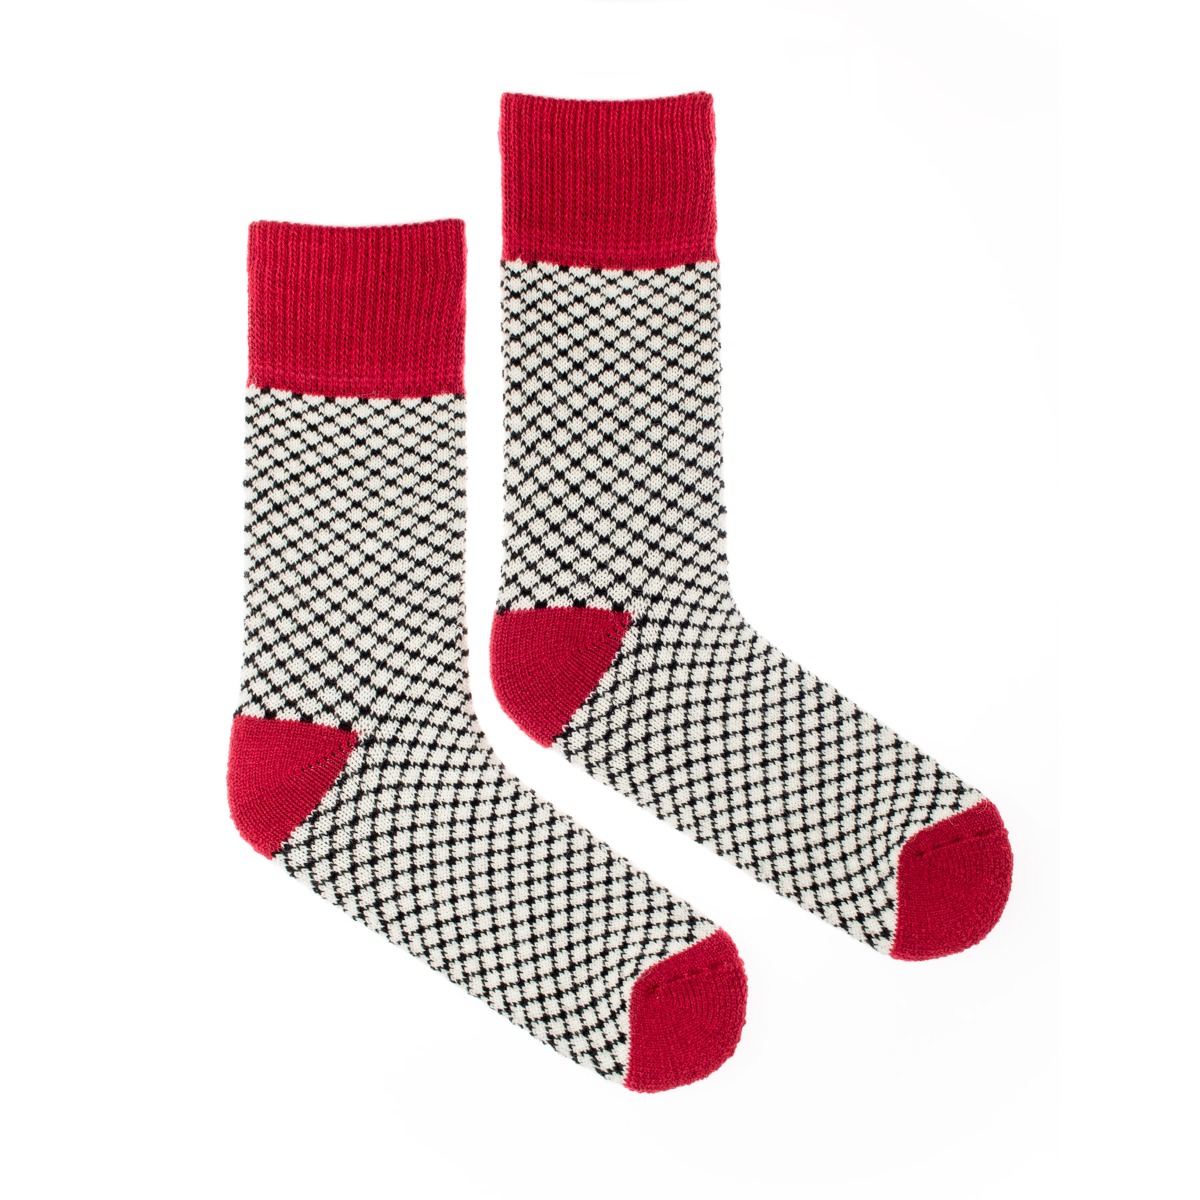 Vlněné ponožky Vlnáč Slunce červené Fusakle